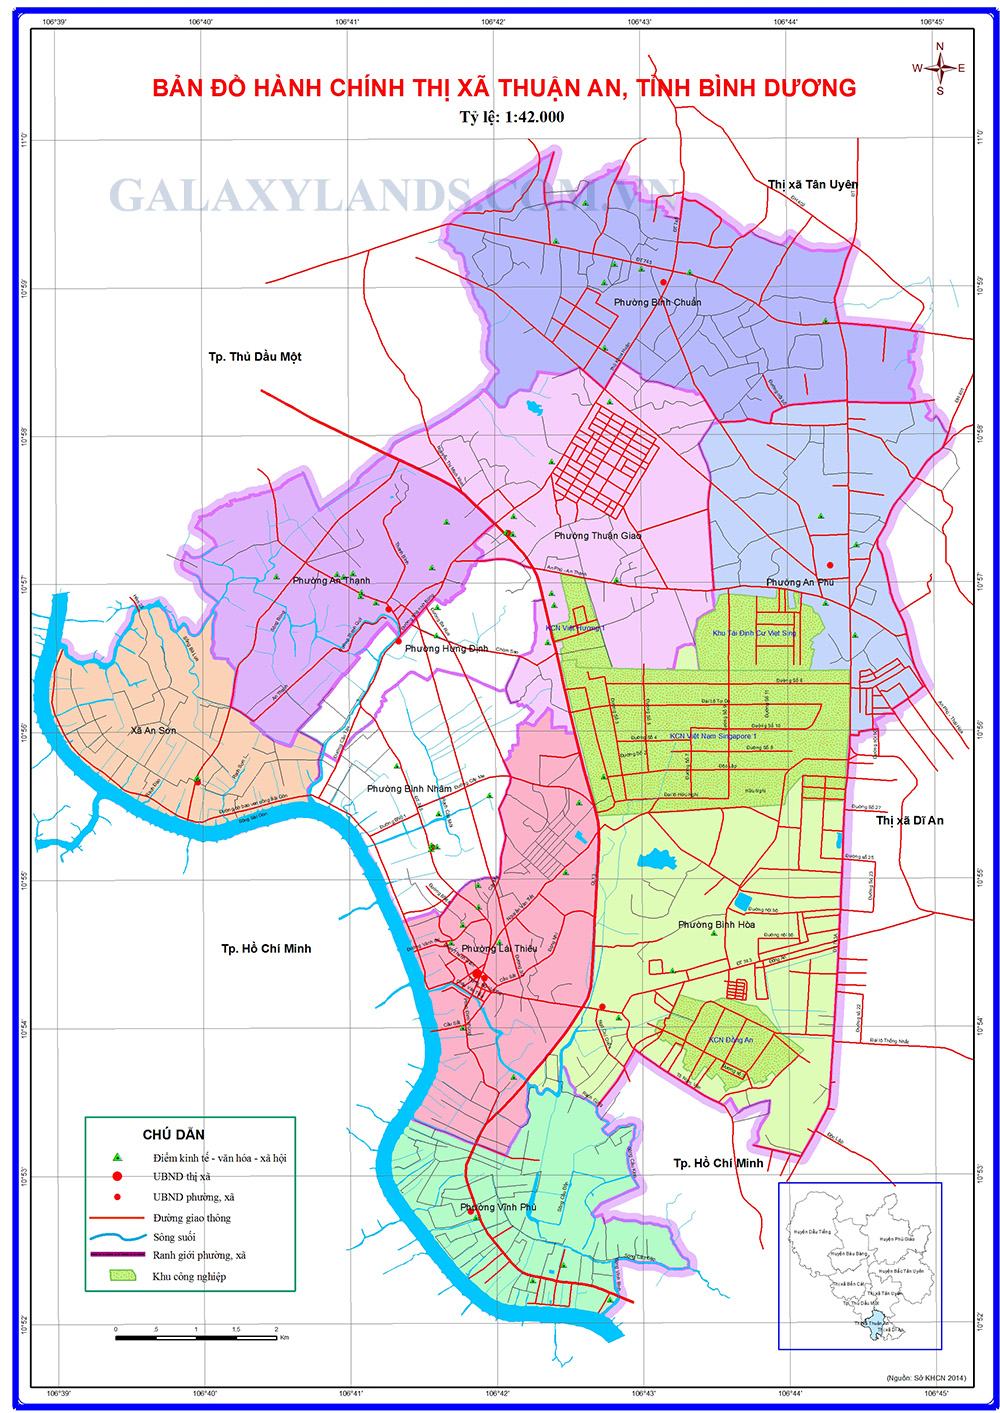 Bản đồ hành chính thành phố Thuận An Bình Dương